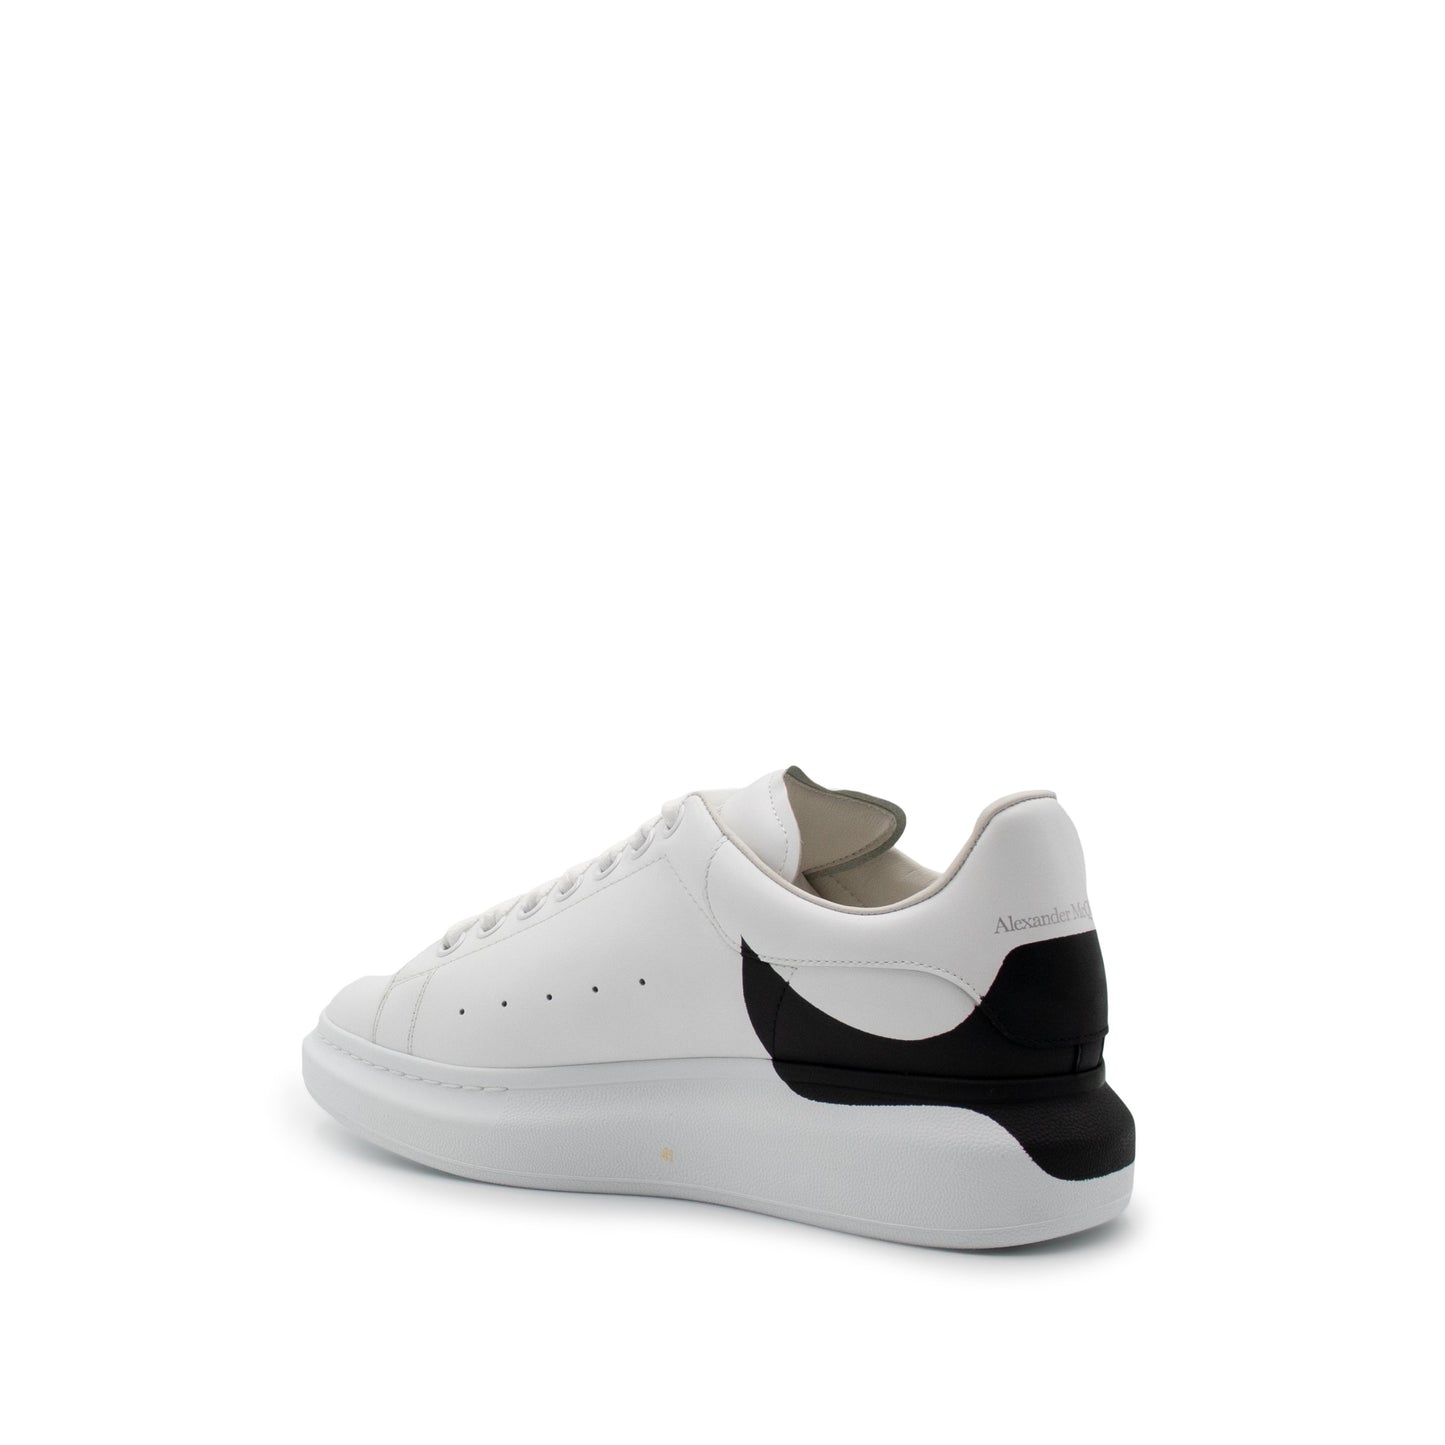 Larry Printed Drop Heel Sneaker in White/Black